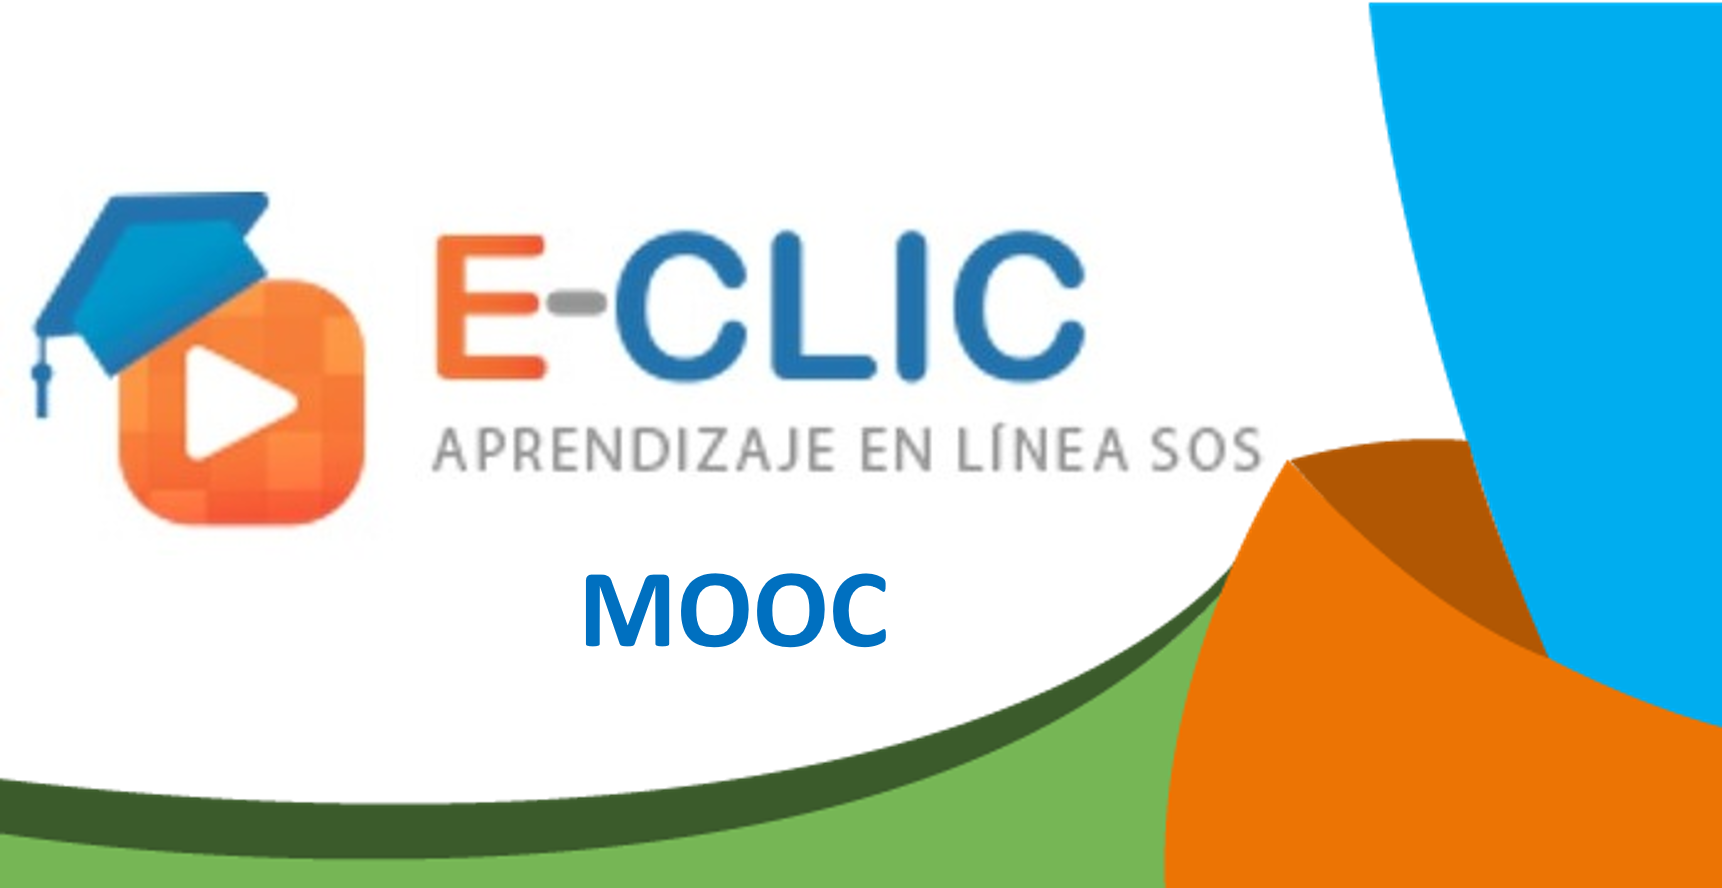 Mooc - ECLIC